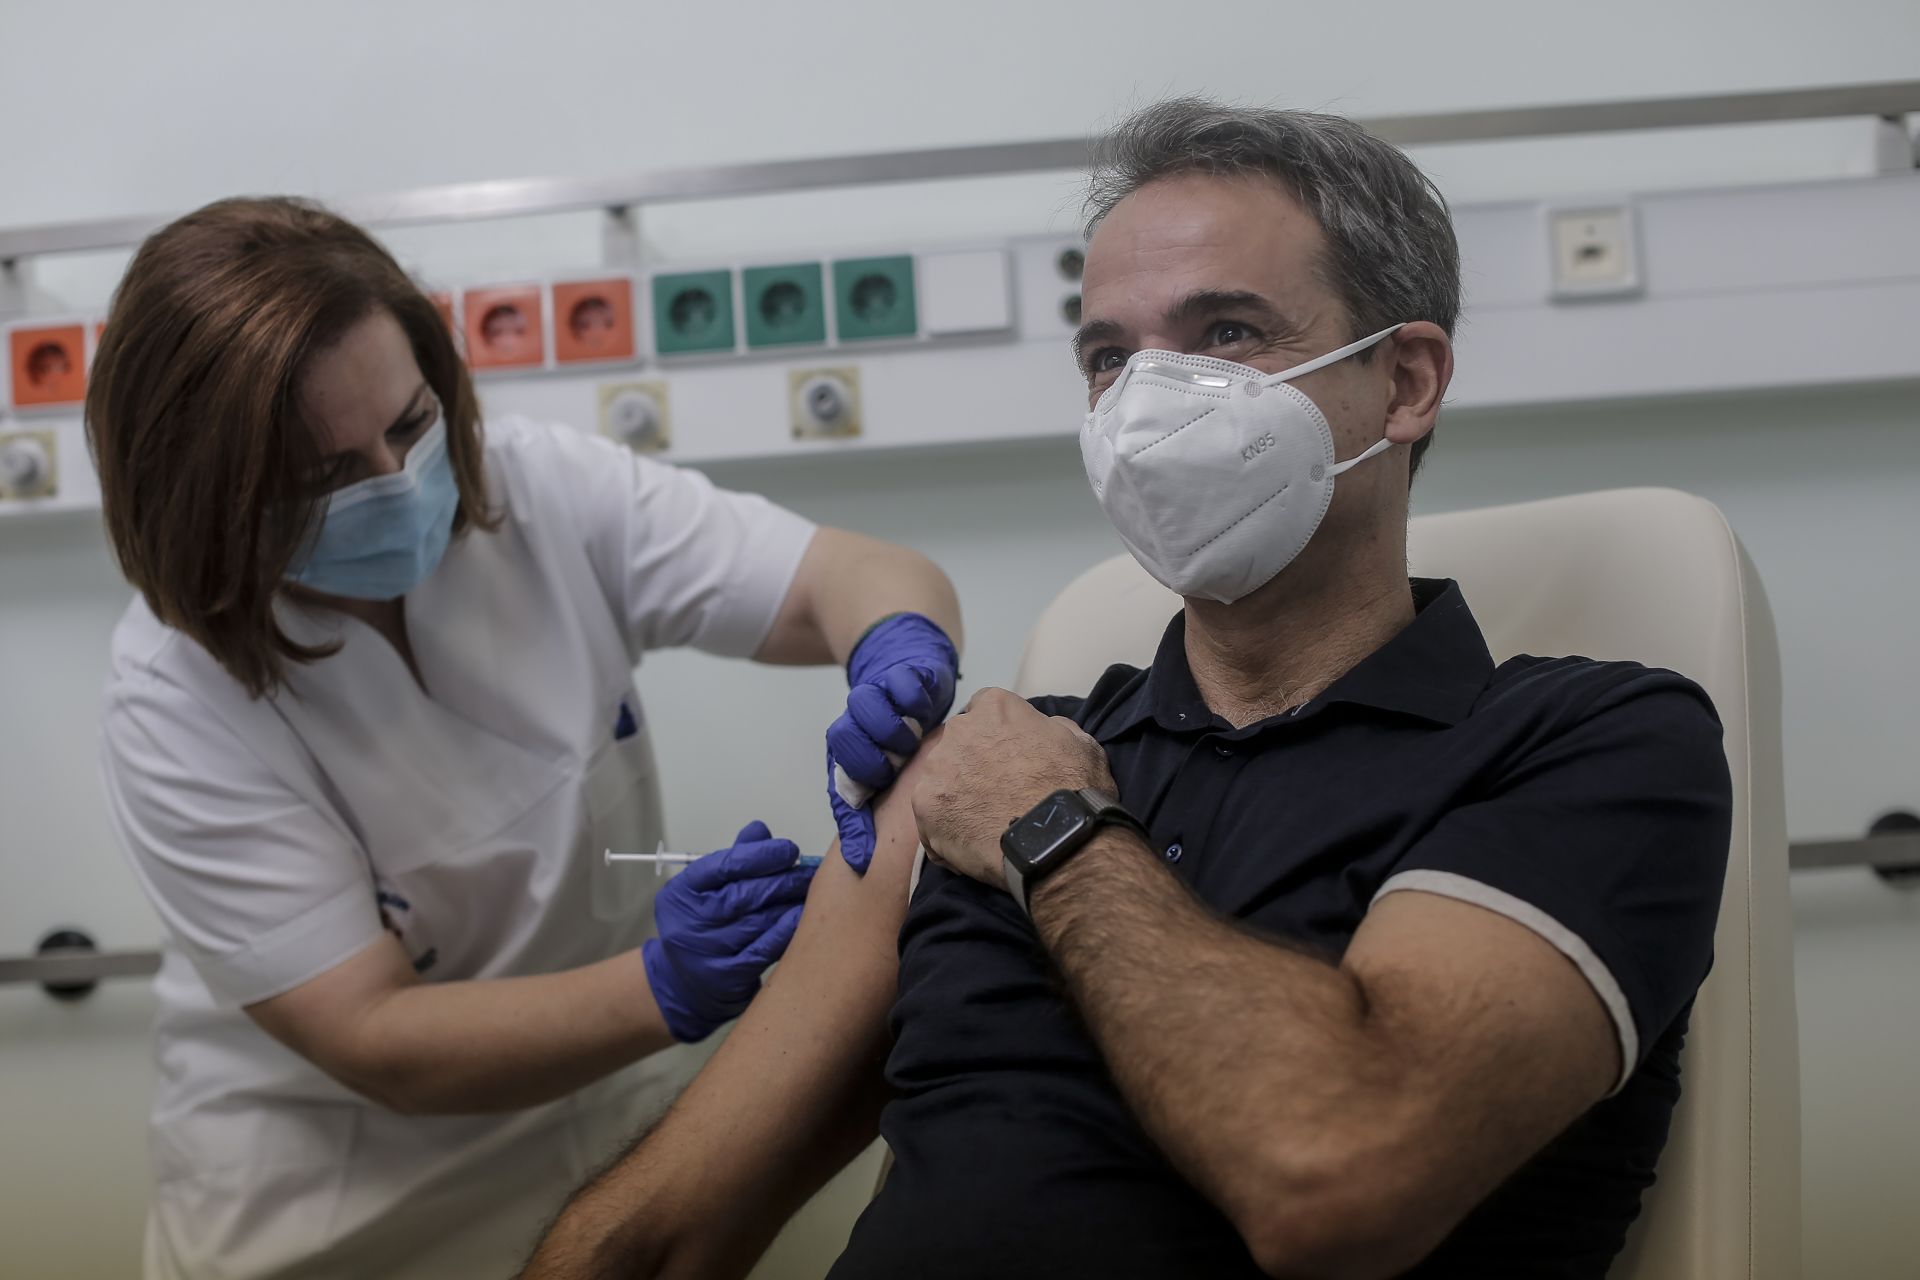  Гръцкият министър председател Кириакос Мицотакис получава инжекция с доза ваксина COVID-19 в университетската болница в Атина 